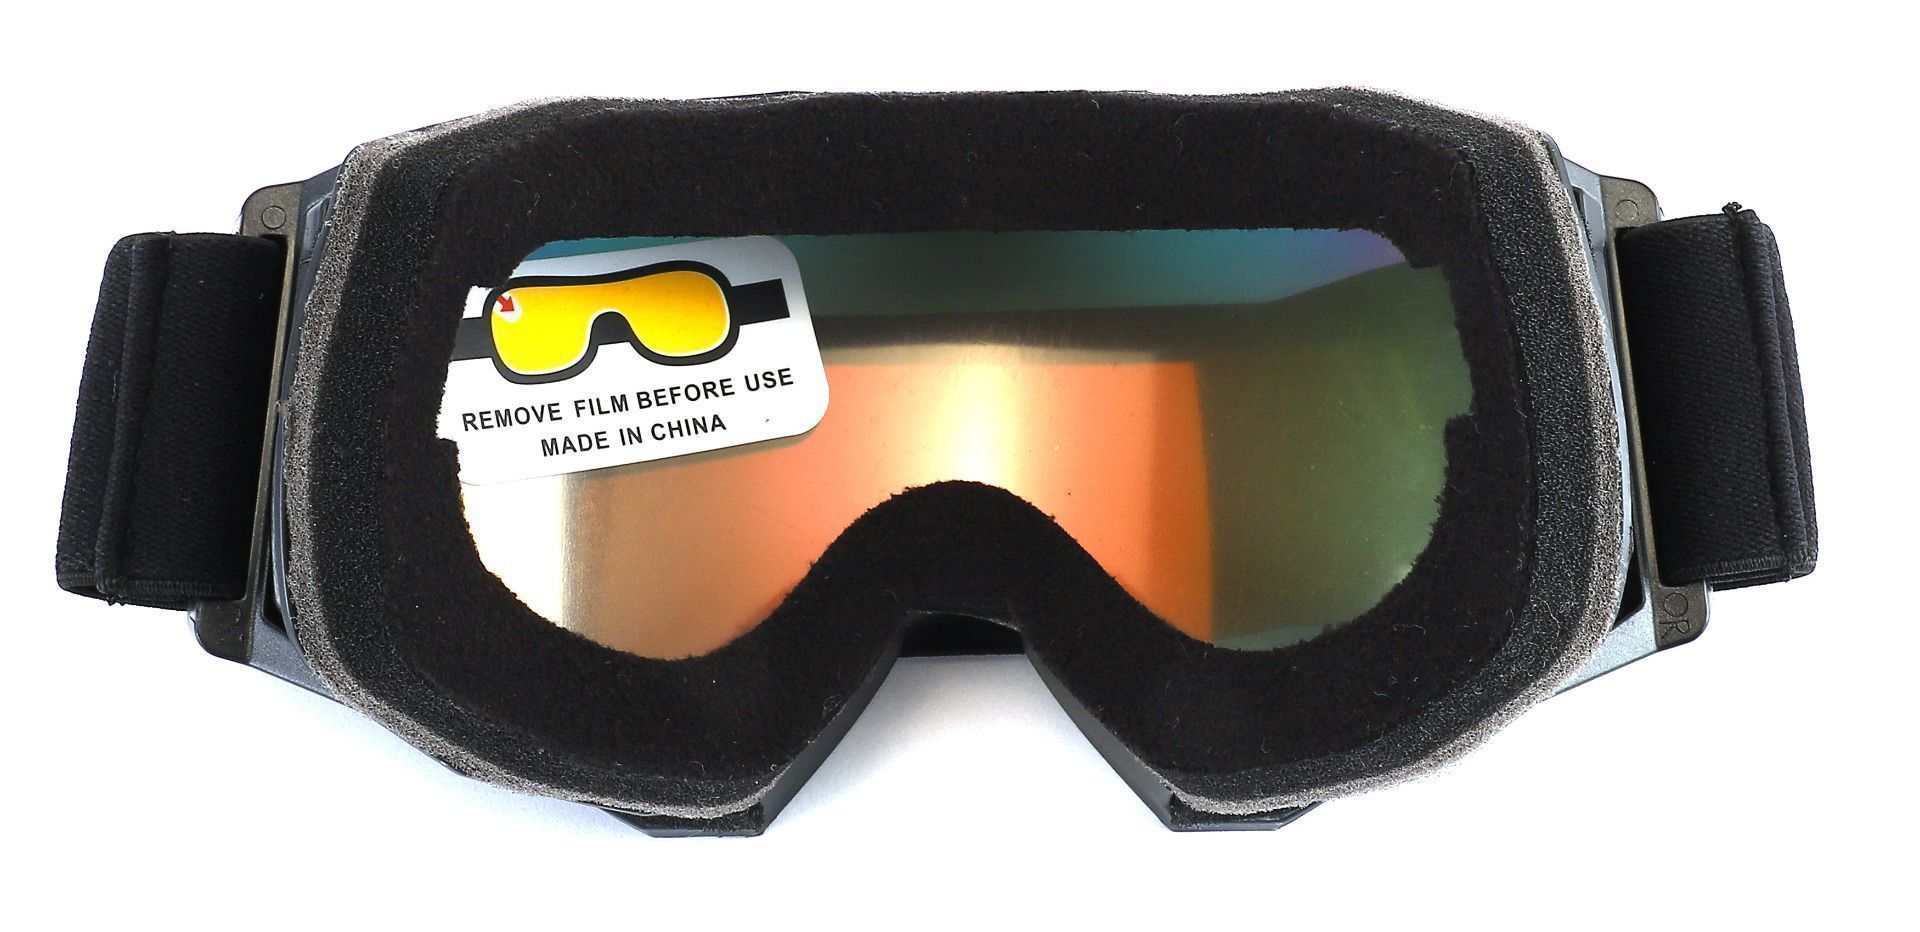 Keystone Ski Goggles Black Non-Rx Sunglasses